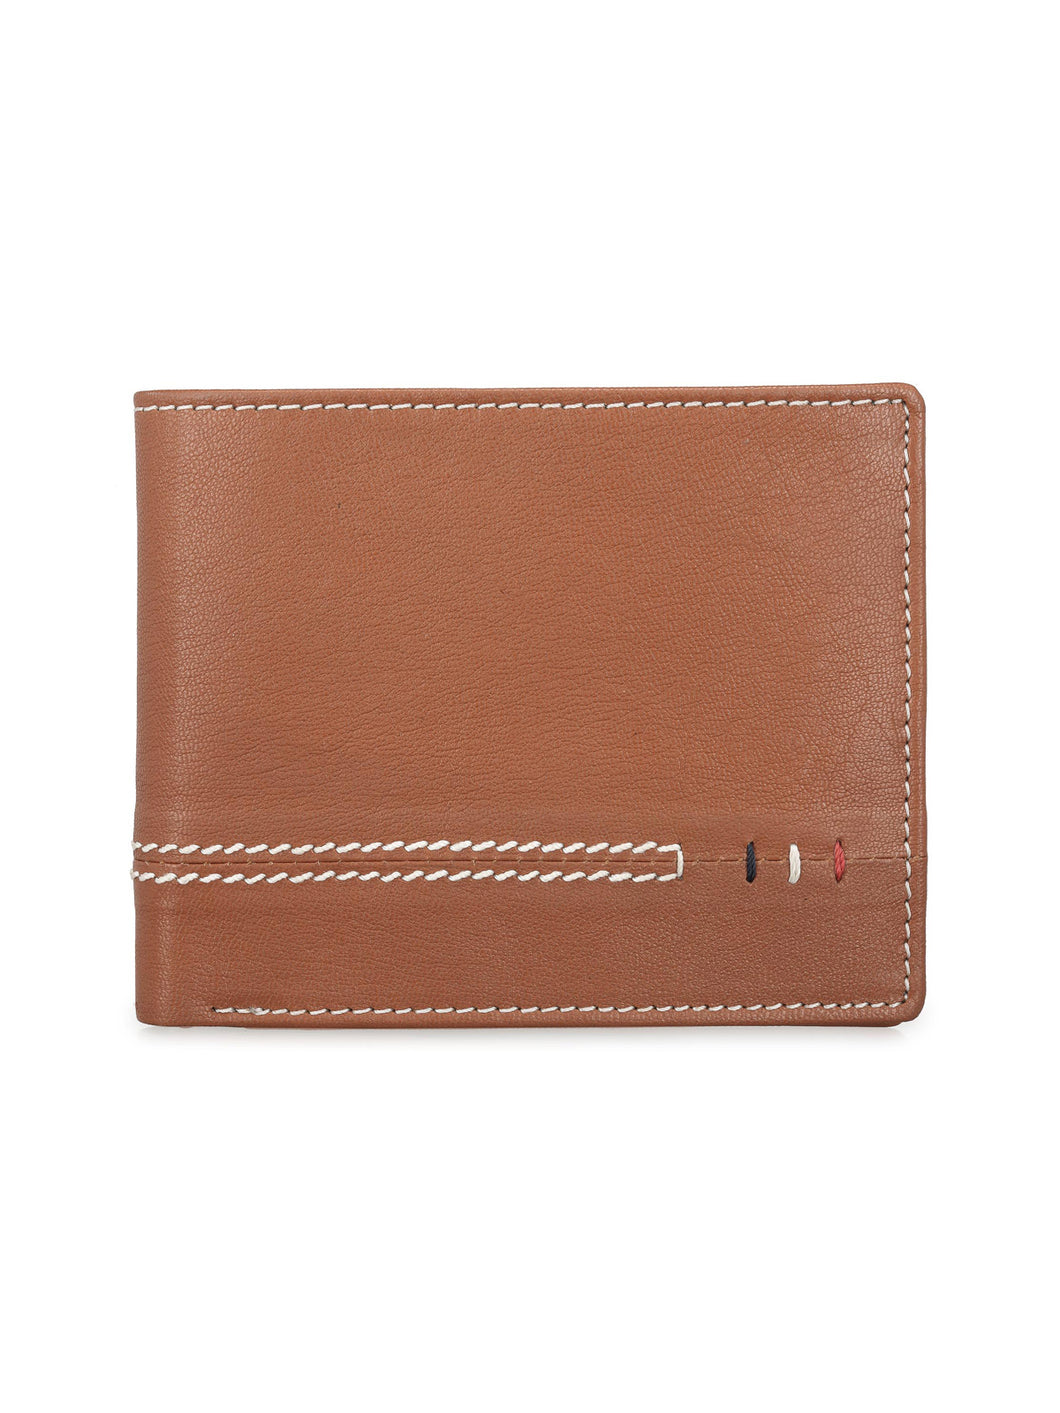 Teakwood Genuine Leather Wallet - Tan